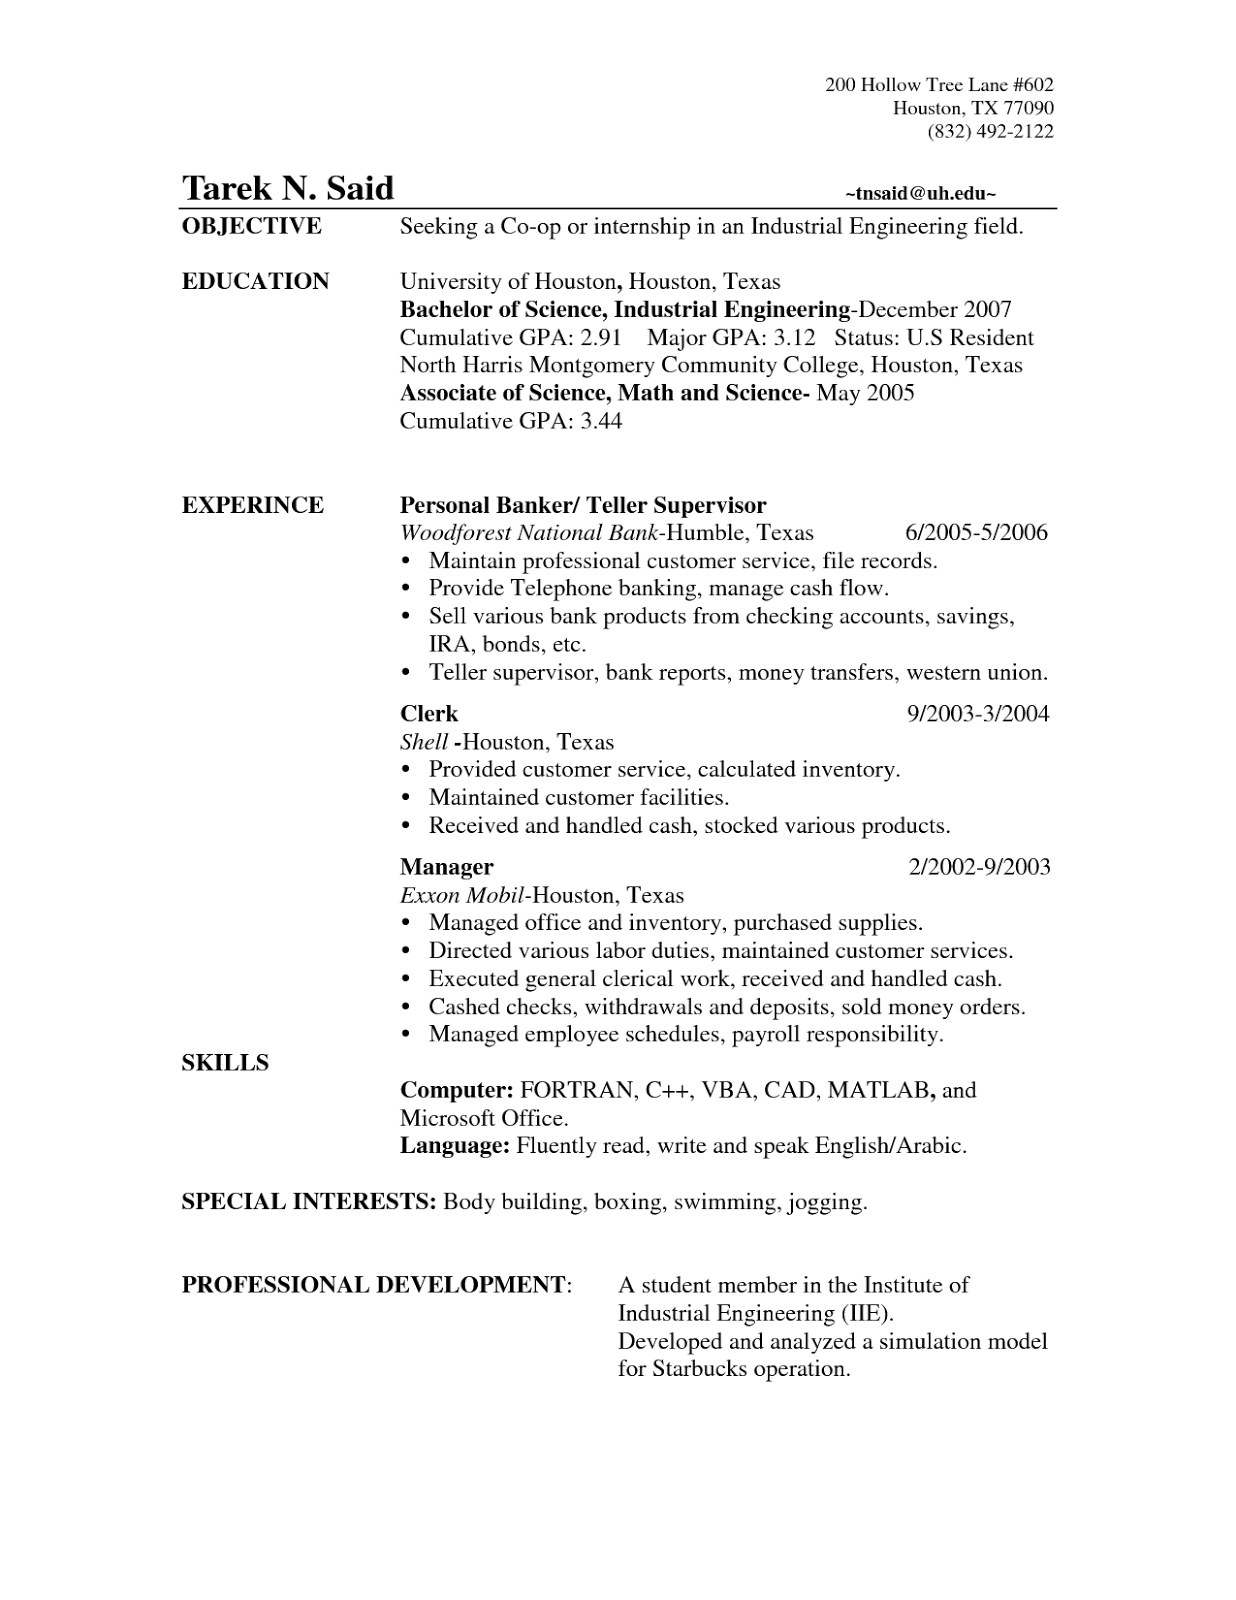 Bank resume sample